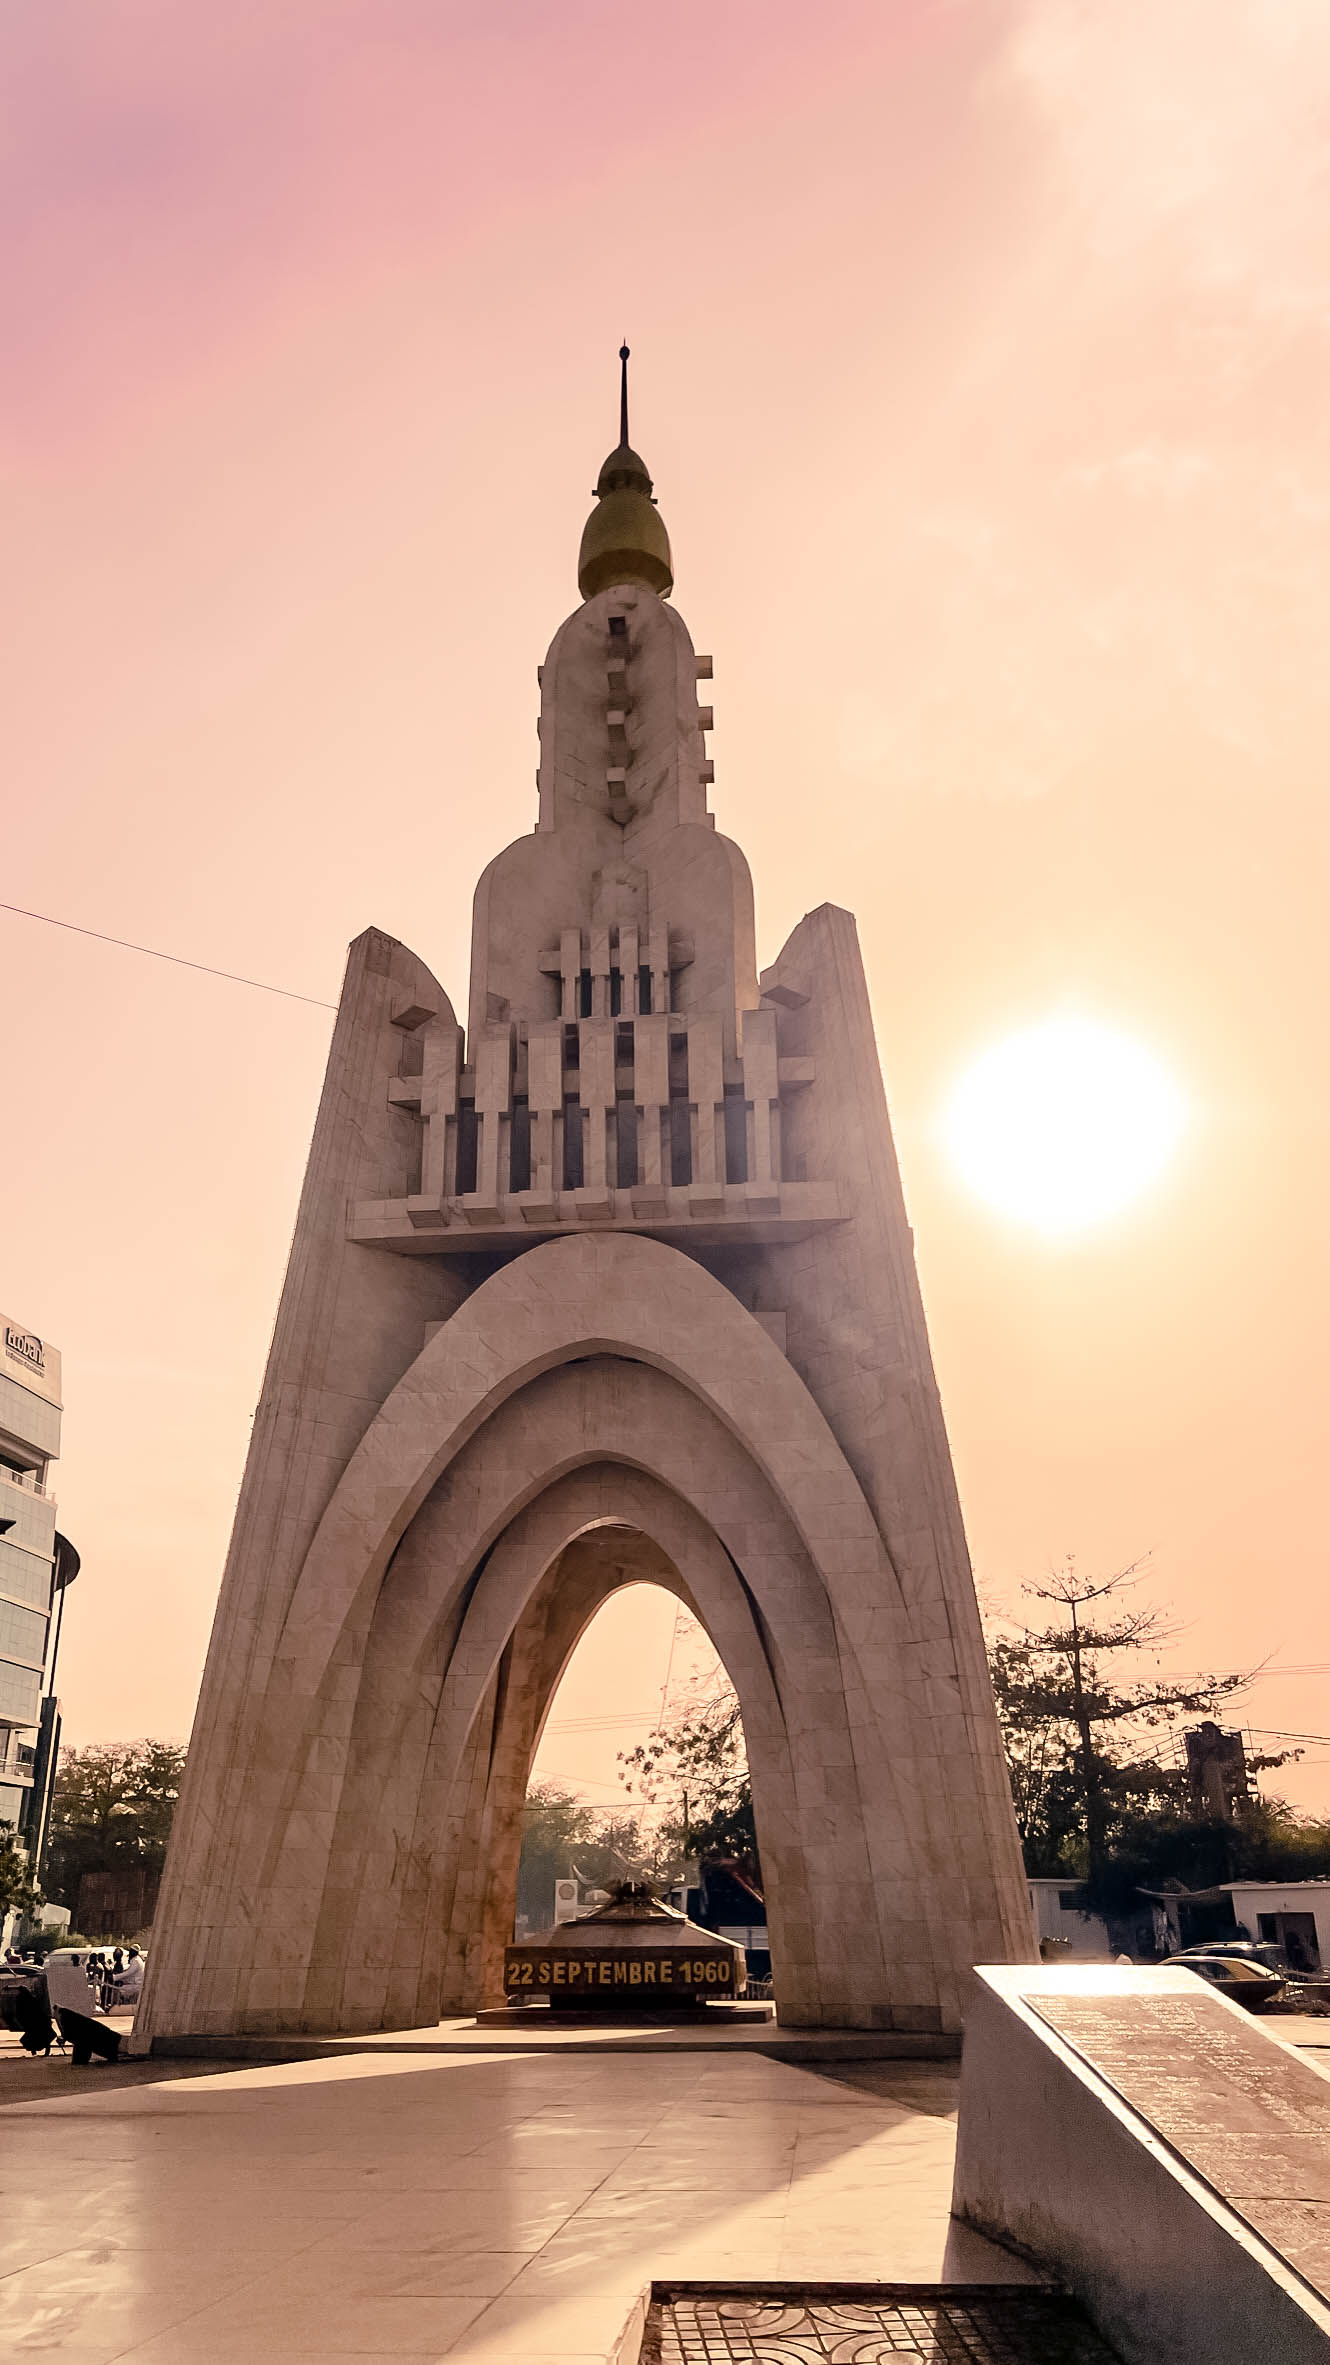 Monuments à Bamako : Monument de l'Indépendance